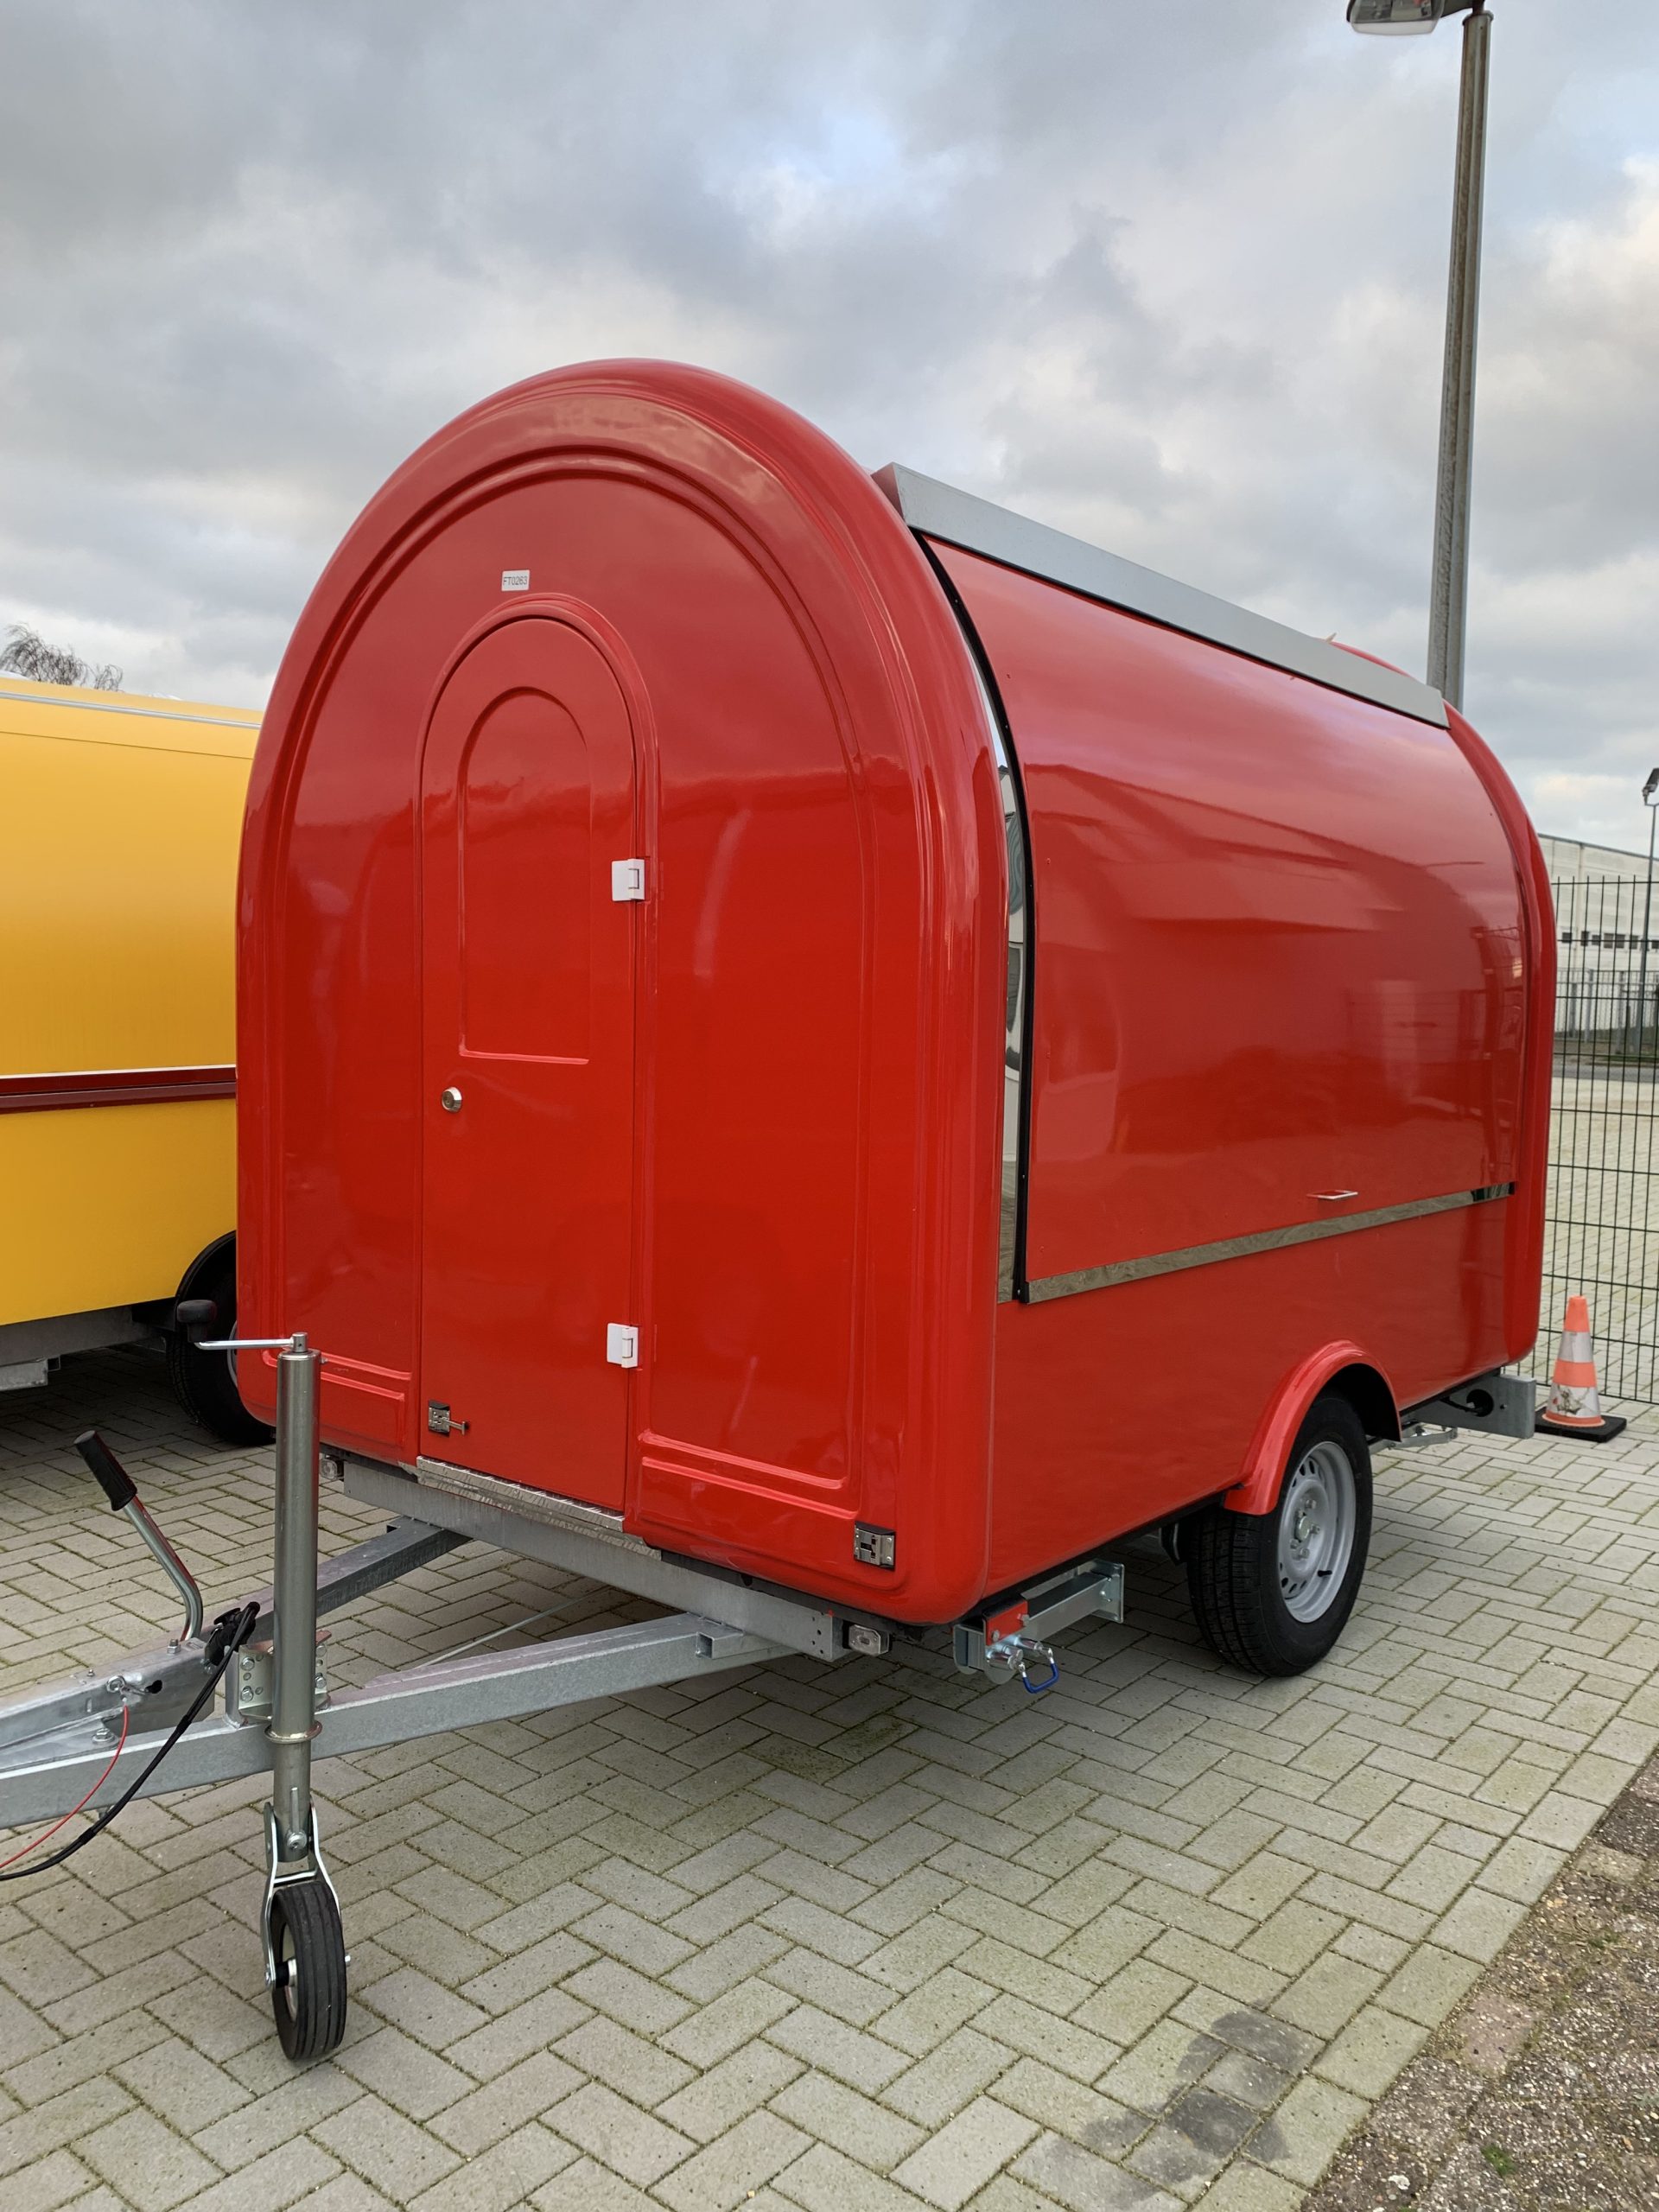 FT 227 2800 RAL 3020 Exclusive trailer voorzien van koelwerkbank met saladette €. 14.310,00